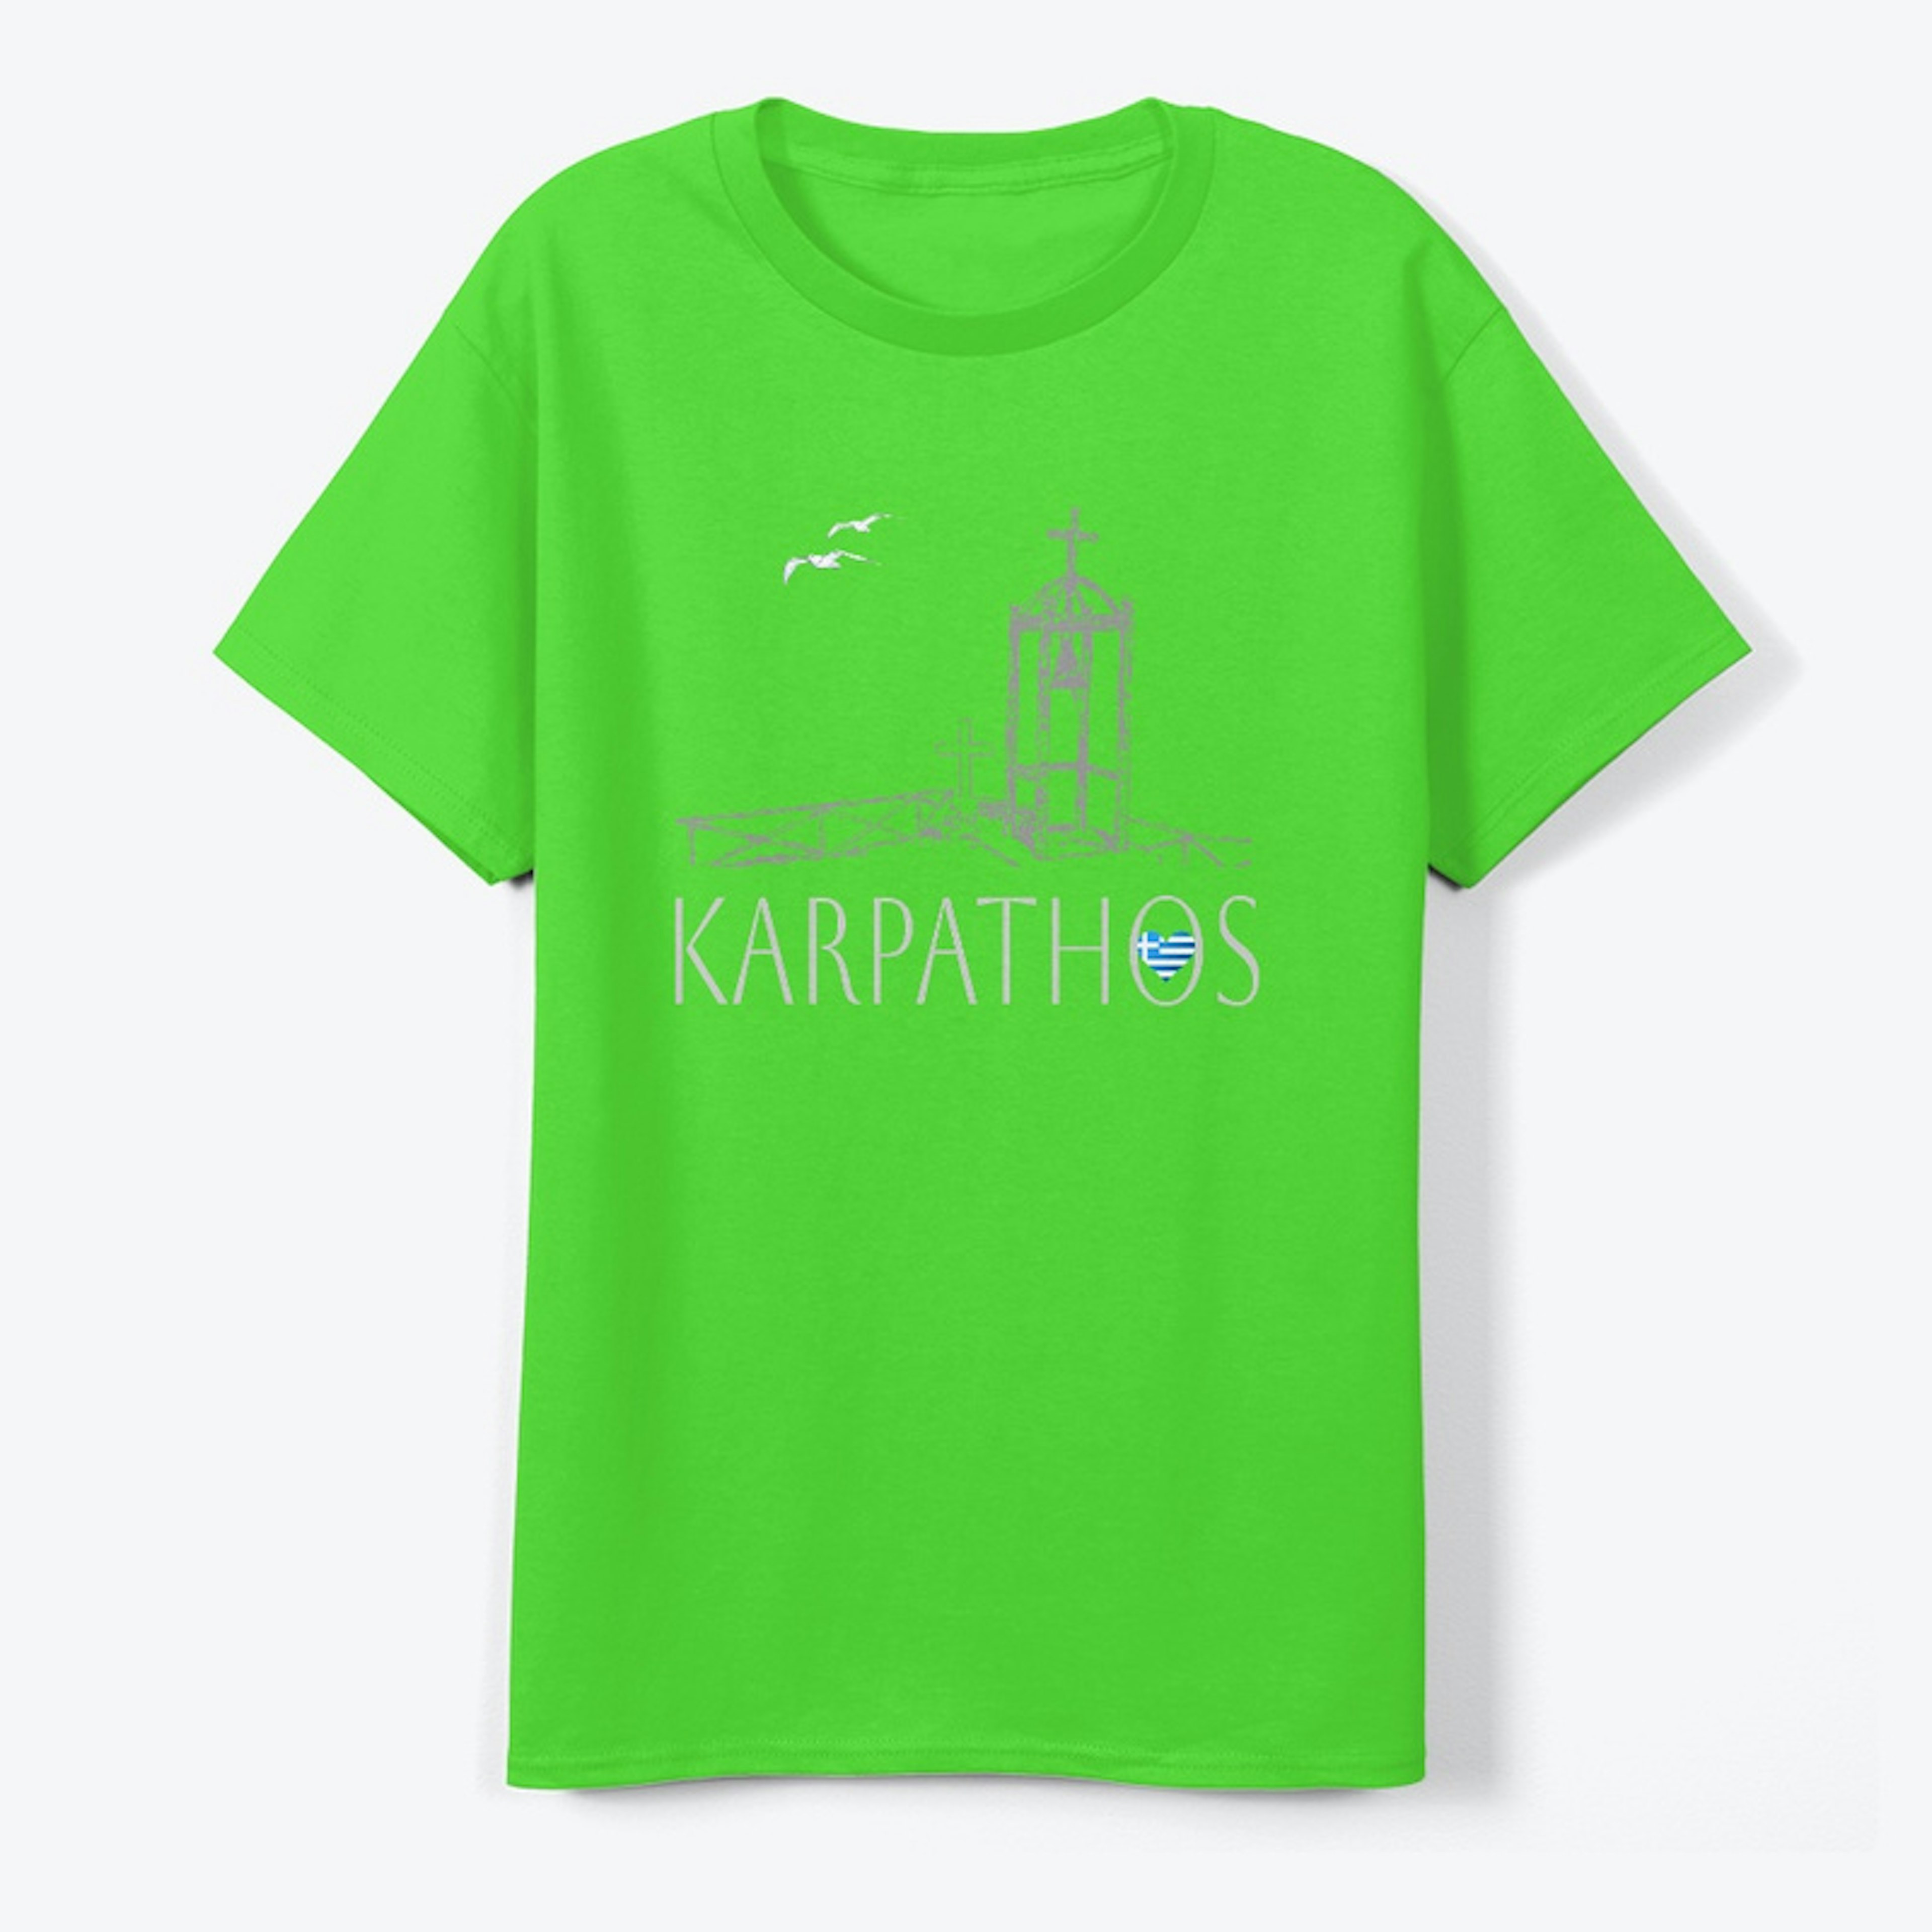 KARPATHOS